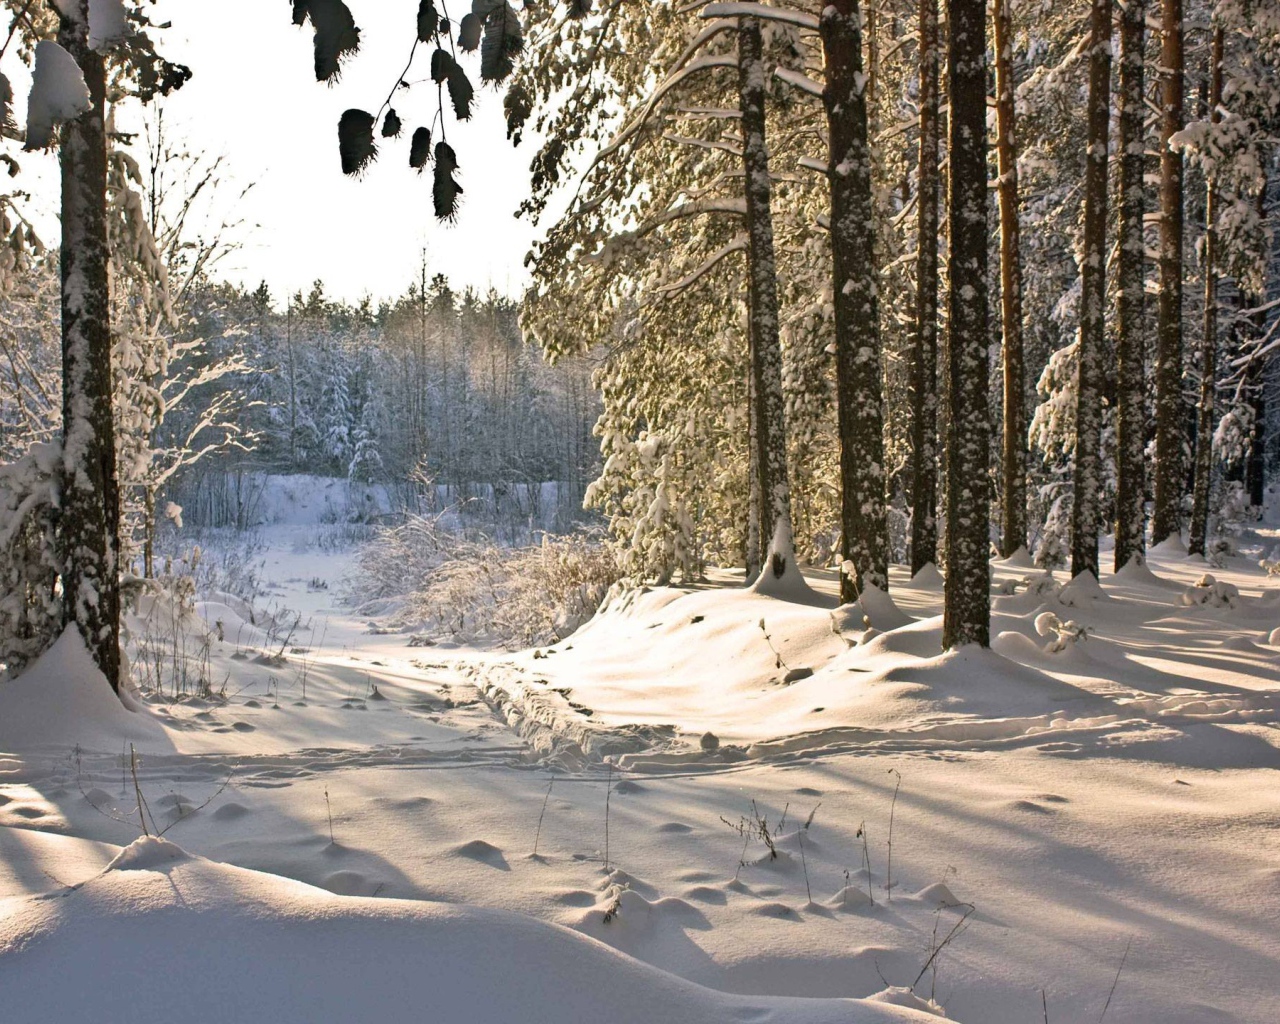 Зимний день в лесу